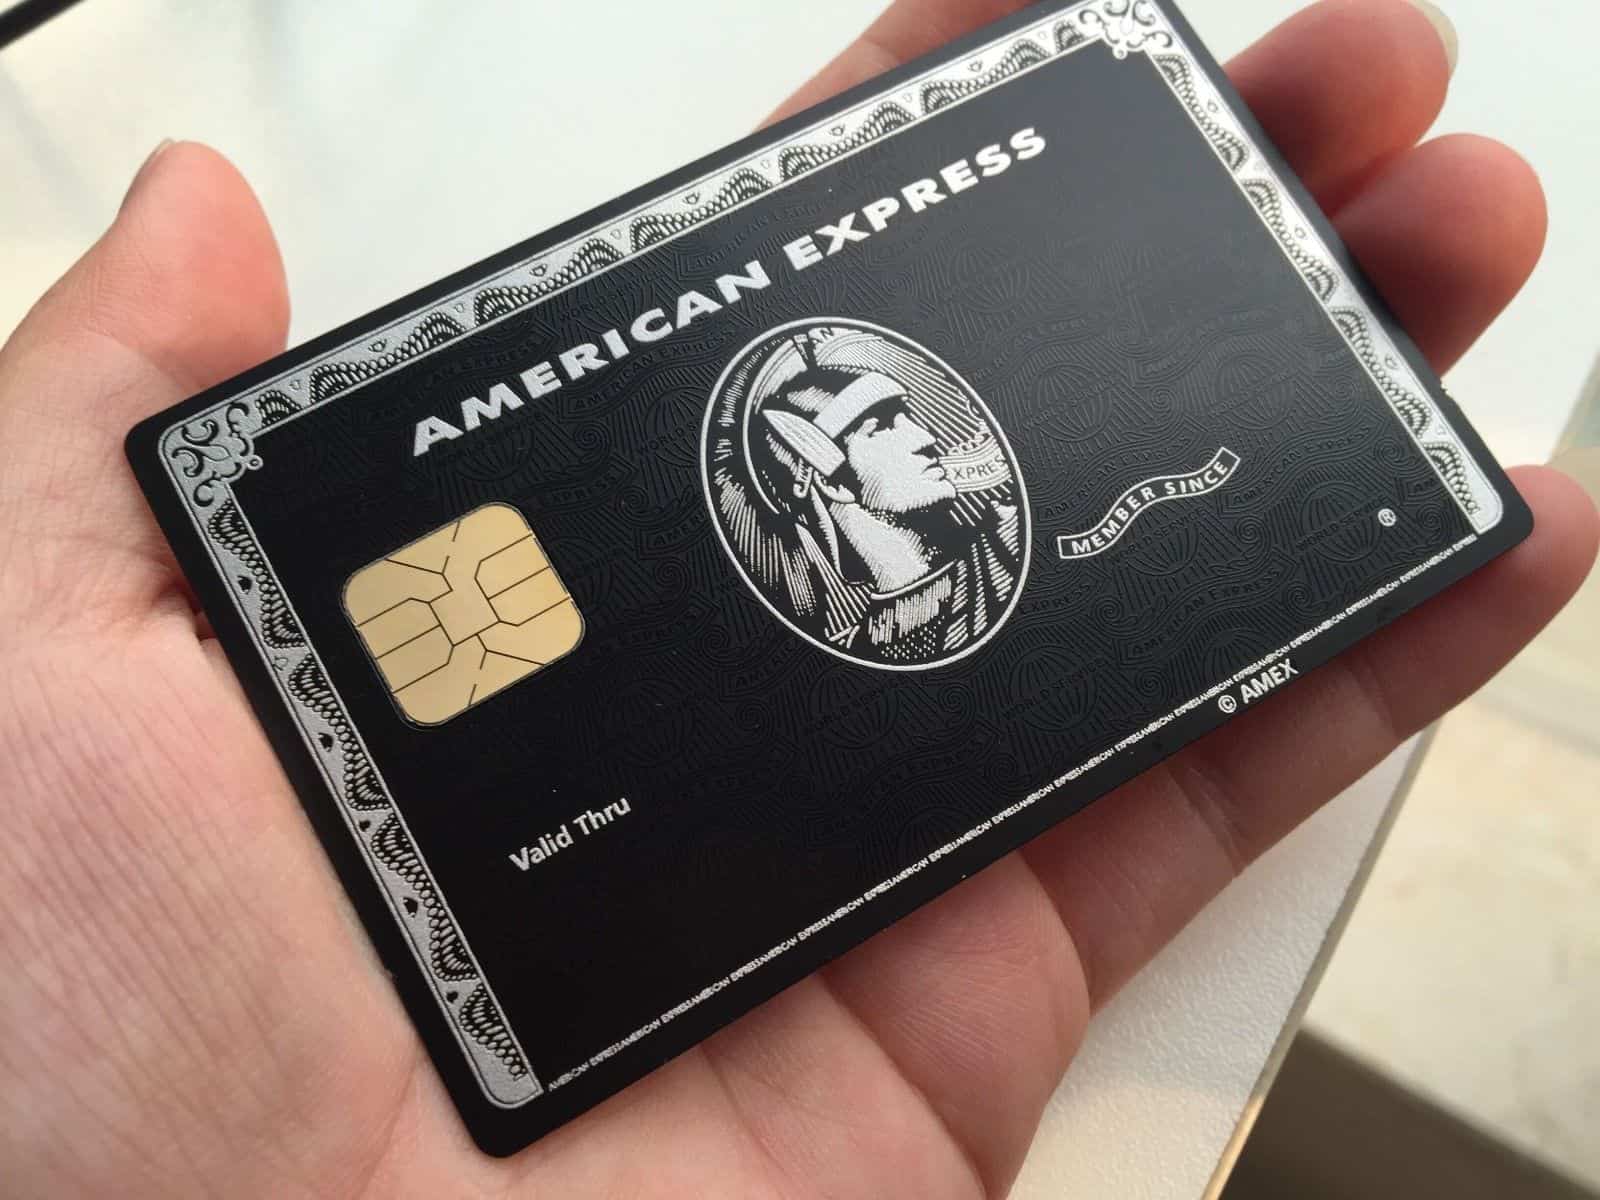 Black Card là gì? Tìm hiểu thông tin về thẻ tín dụng BlackCard